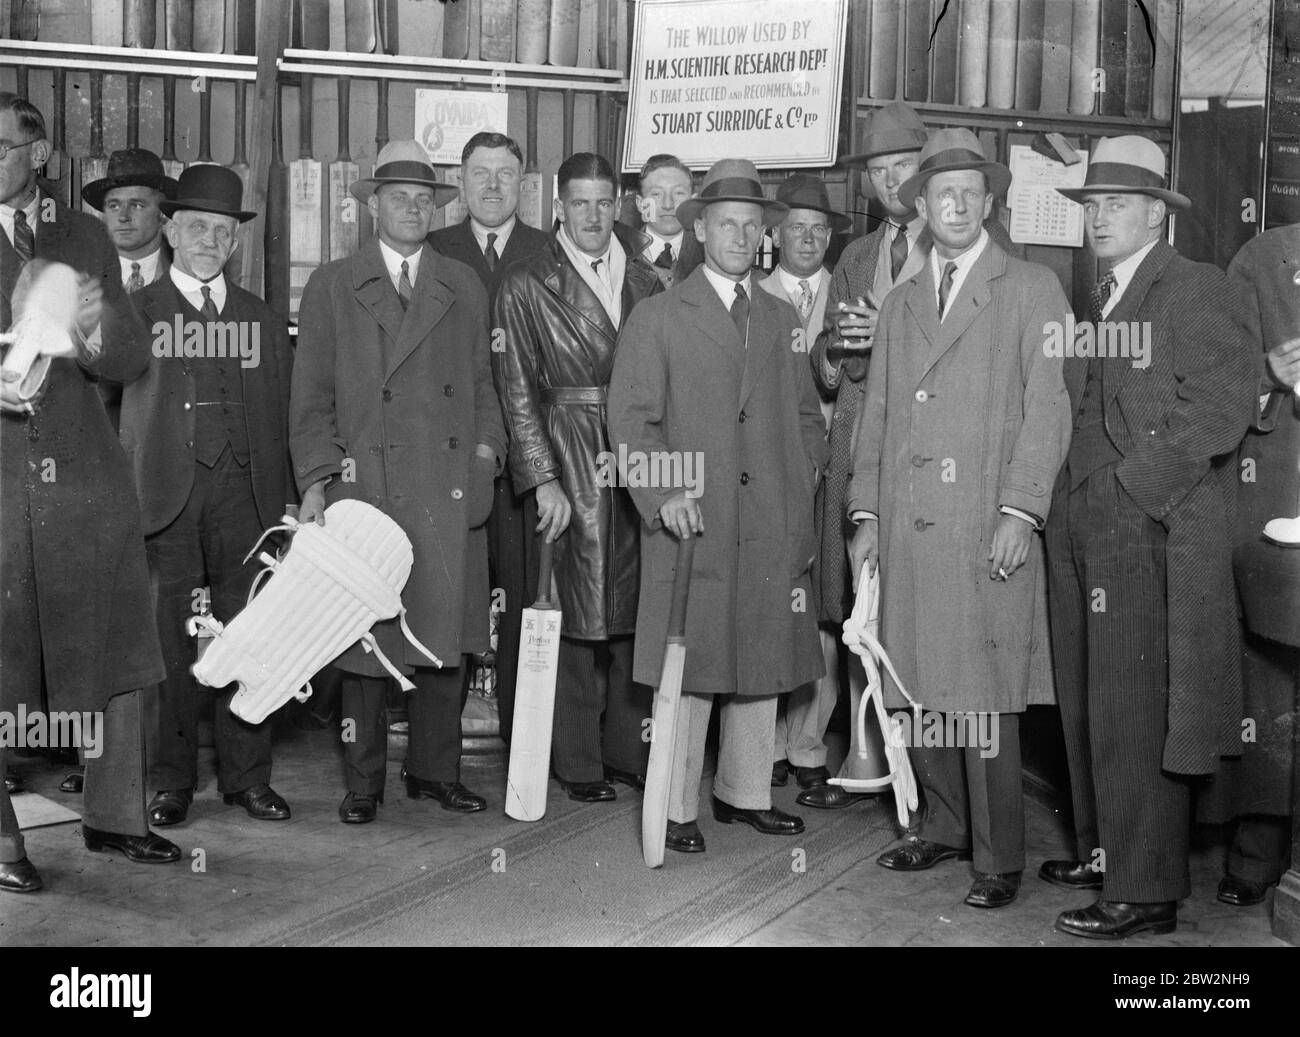 L'équipe australienne de tournée Ashes achète son équipement chez London sports Outfitters . Les touristes étaient capitaine par Bill Woodfull, . La photo montre l'équipe photographiée au magasin . 26 avril 1934 . Banque D'Images